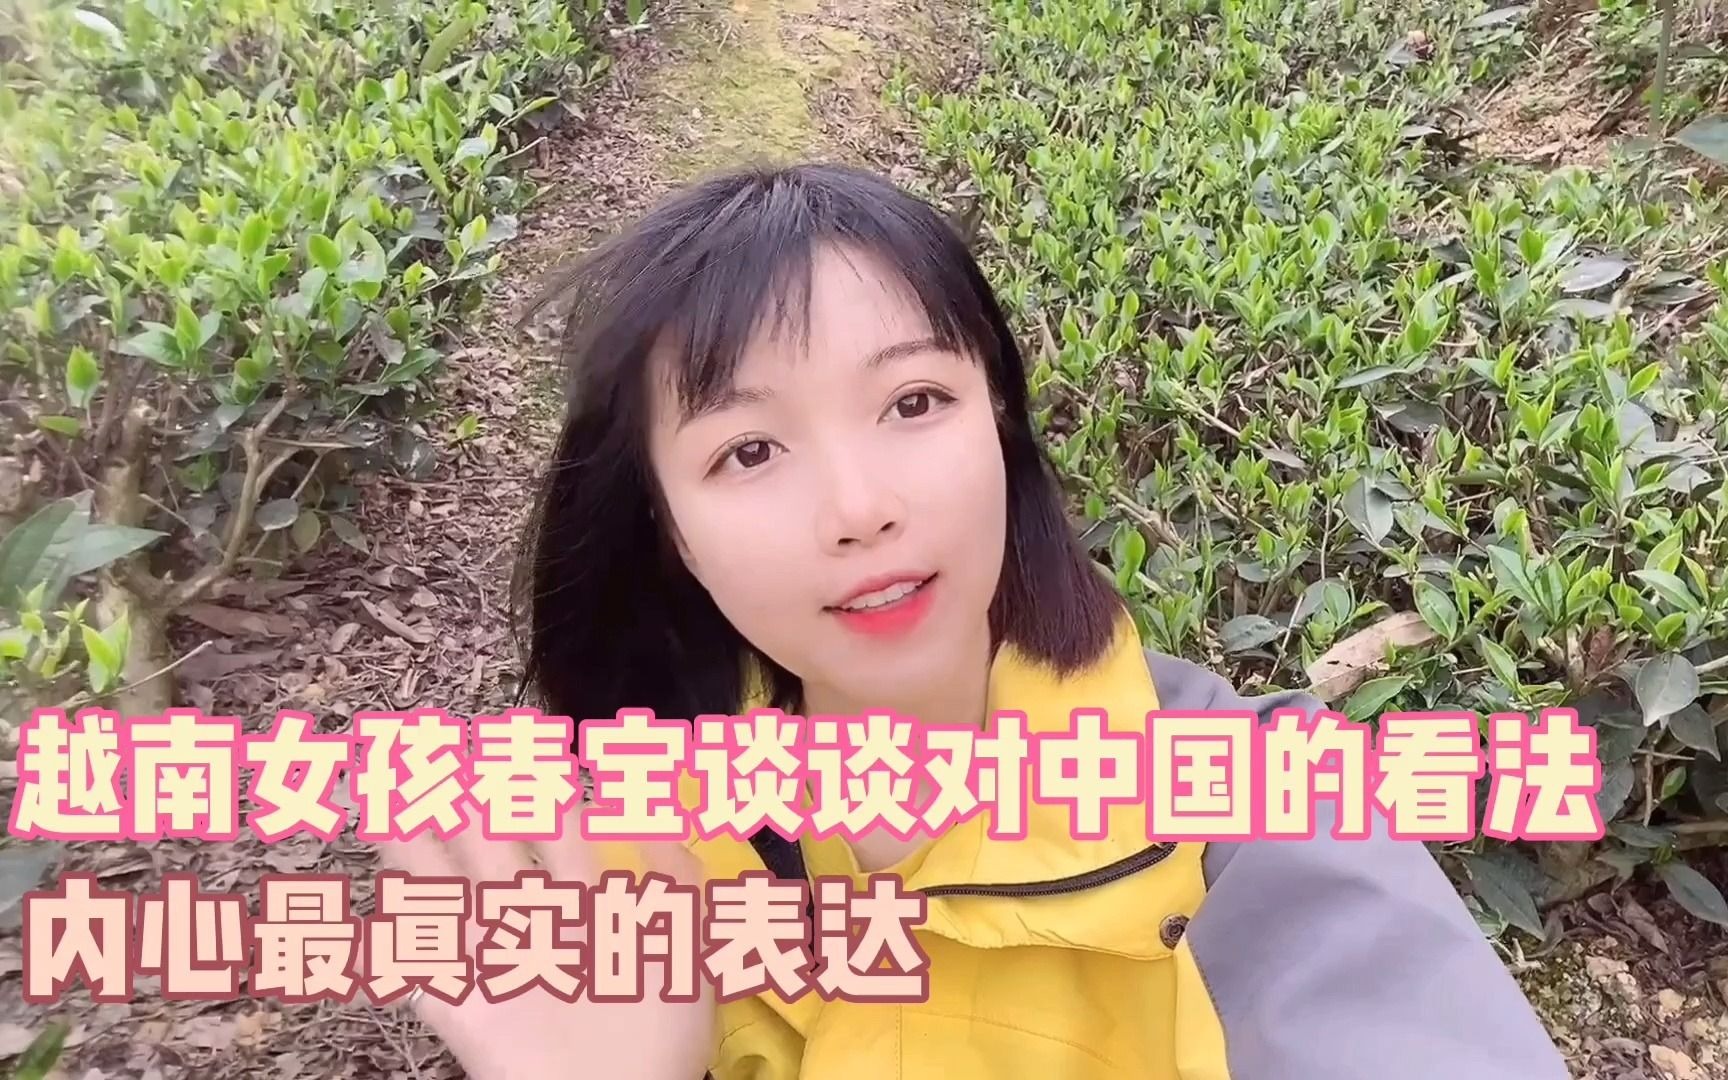 越南女孩春宝谈谈对中国的看法,内心最真实的表达